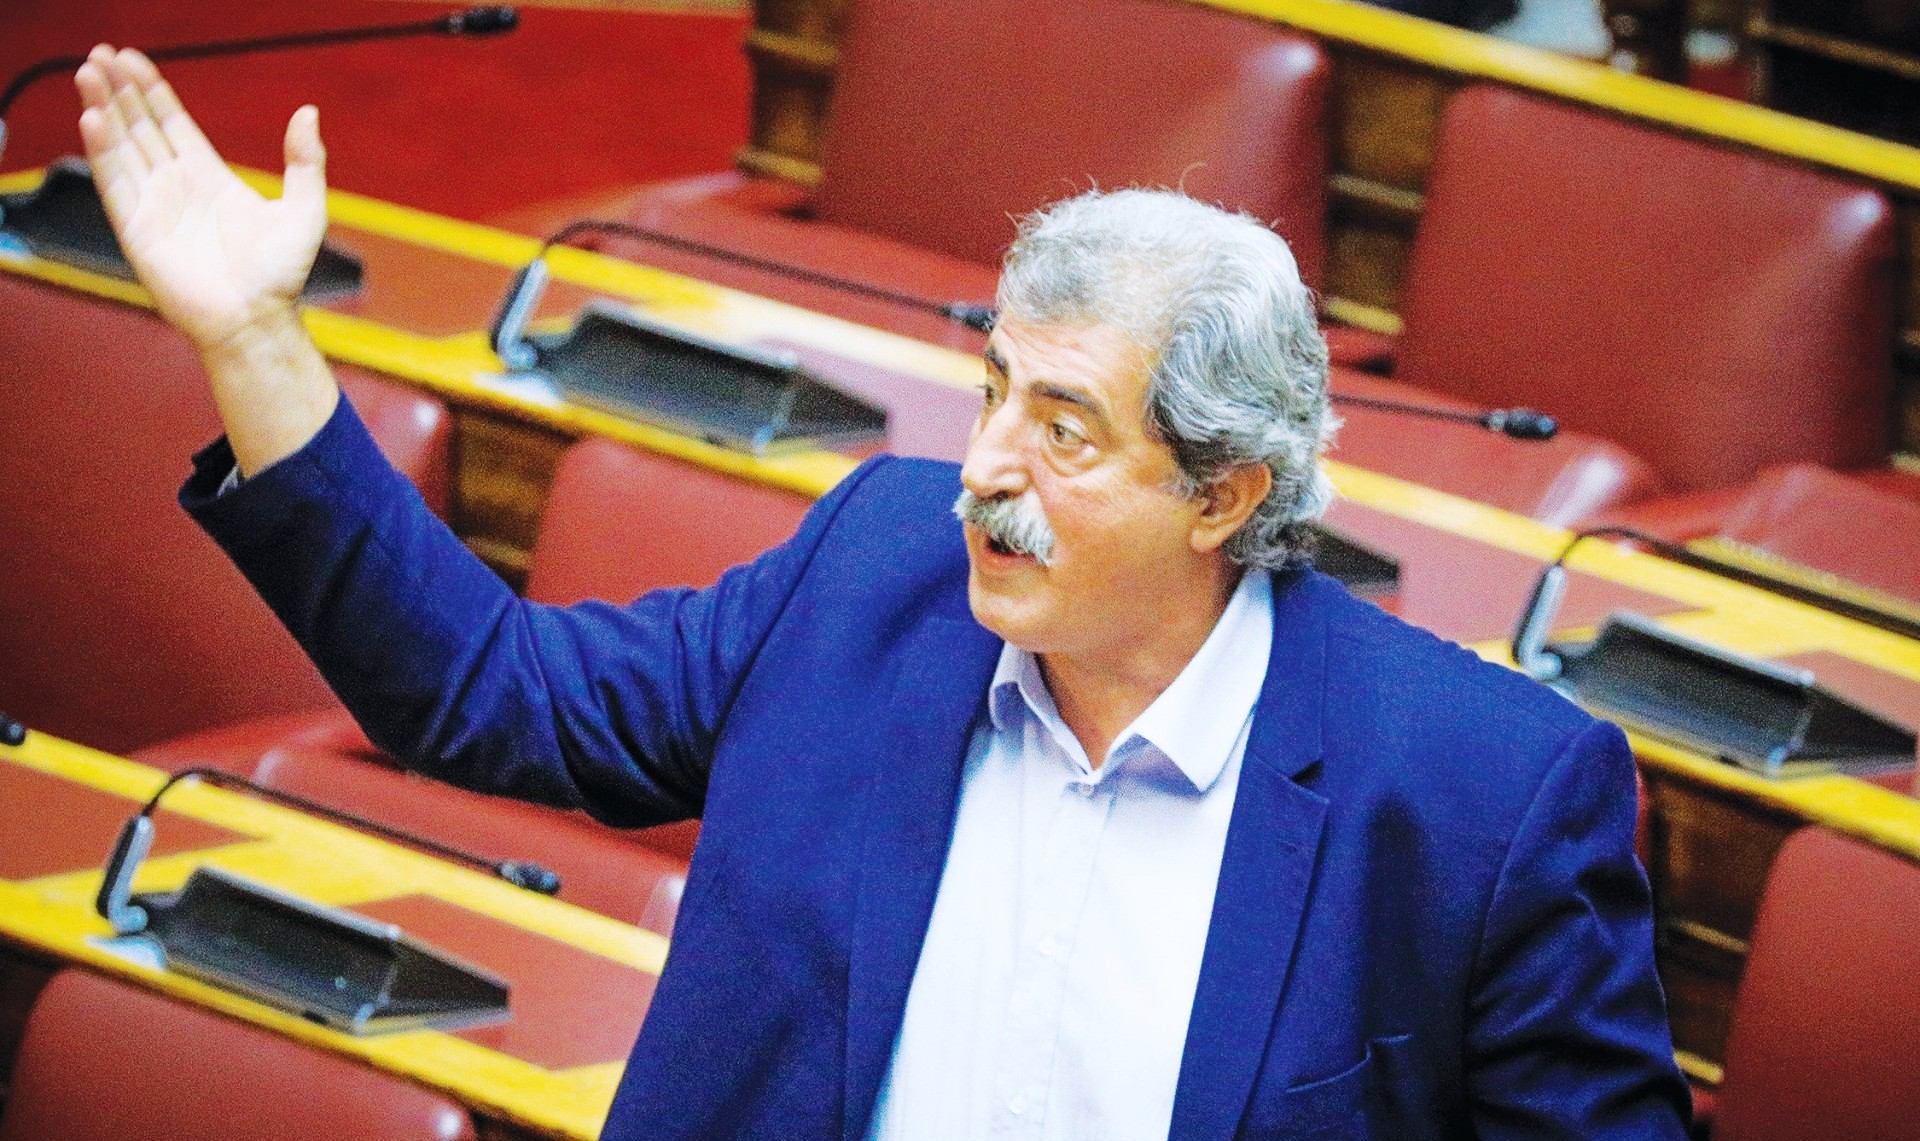 Βουλή: Αντικαταστάθηκε από τις επιτροπές ο Παύλος Πολάκης – Ποιους τοποθέτησε ο ΣΥΡΙΖΑ